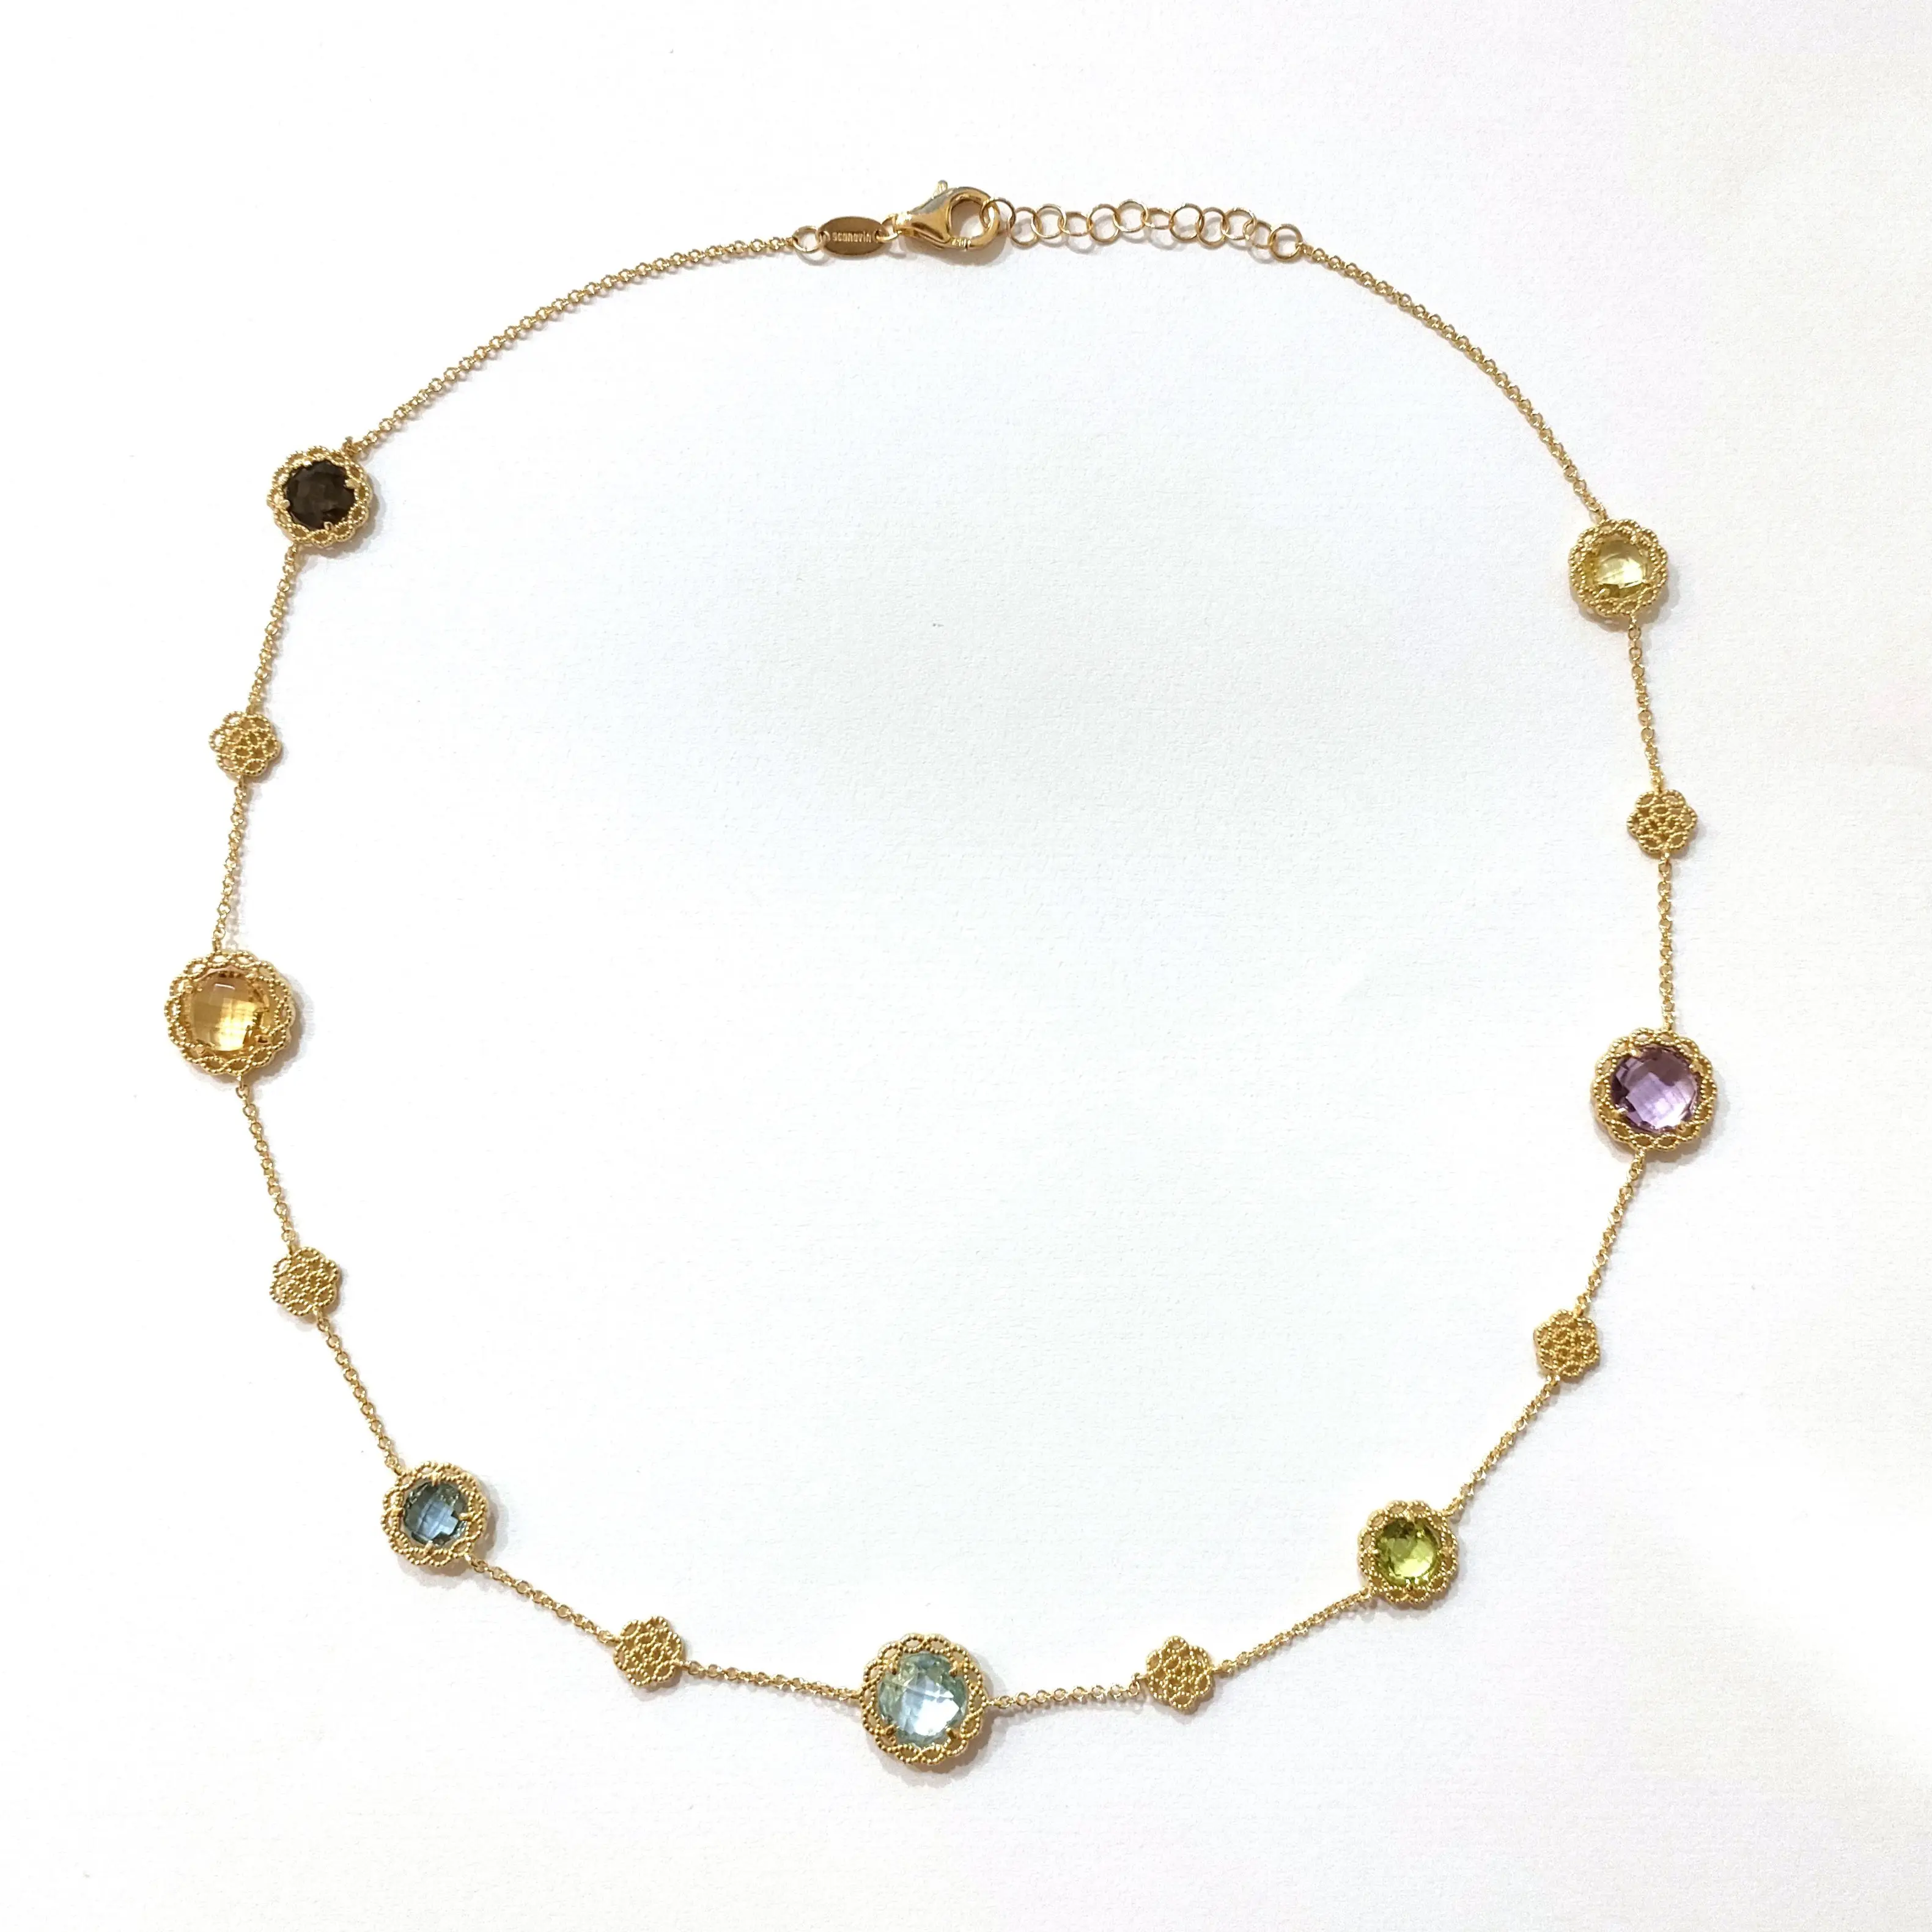 Ожерелье Allegra Quartet of Nature-чистое золото 18 карат, опоясывающая четыре 6 мм круглых натуральных камня-изящная изысканность